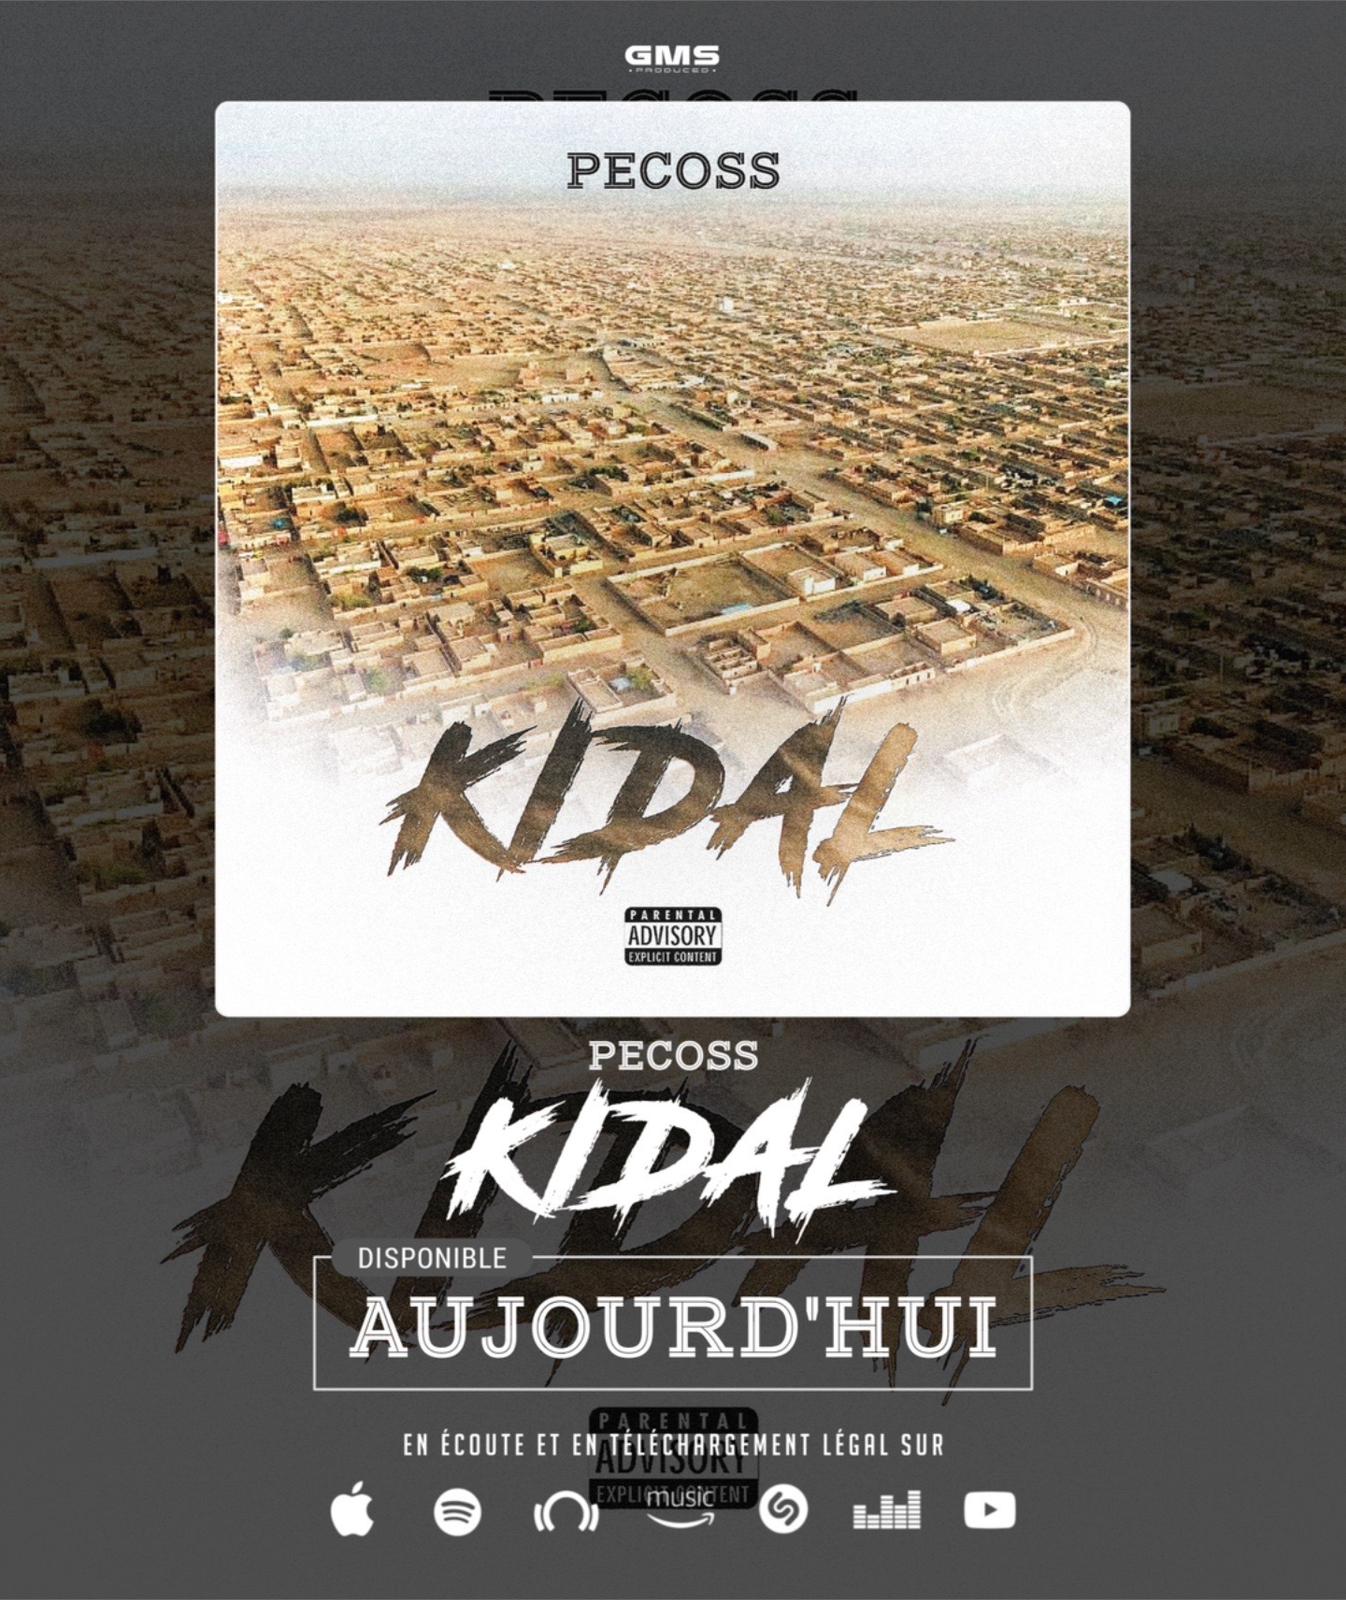 Après la reprise de Kidal, le rappeur Pecoss dédie une chanson aux Forces armées maliennes